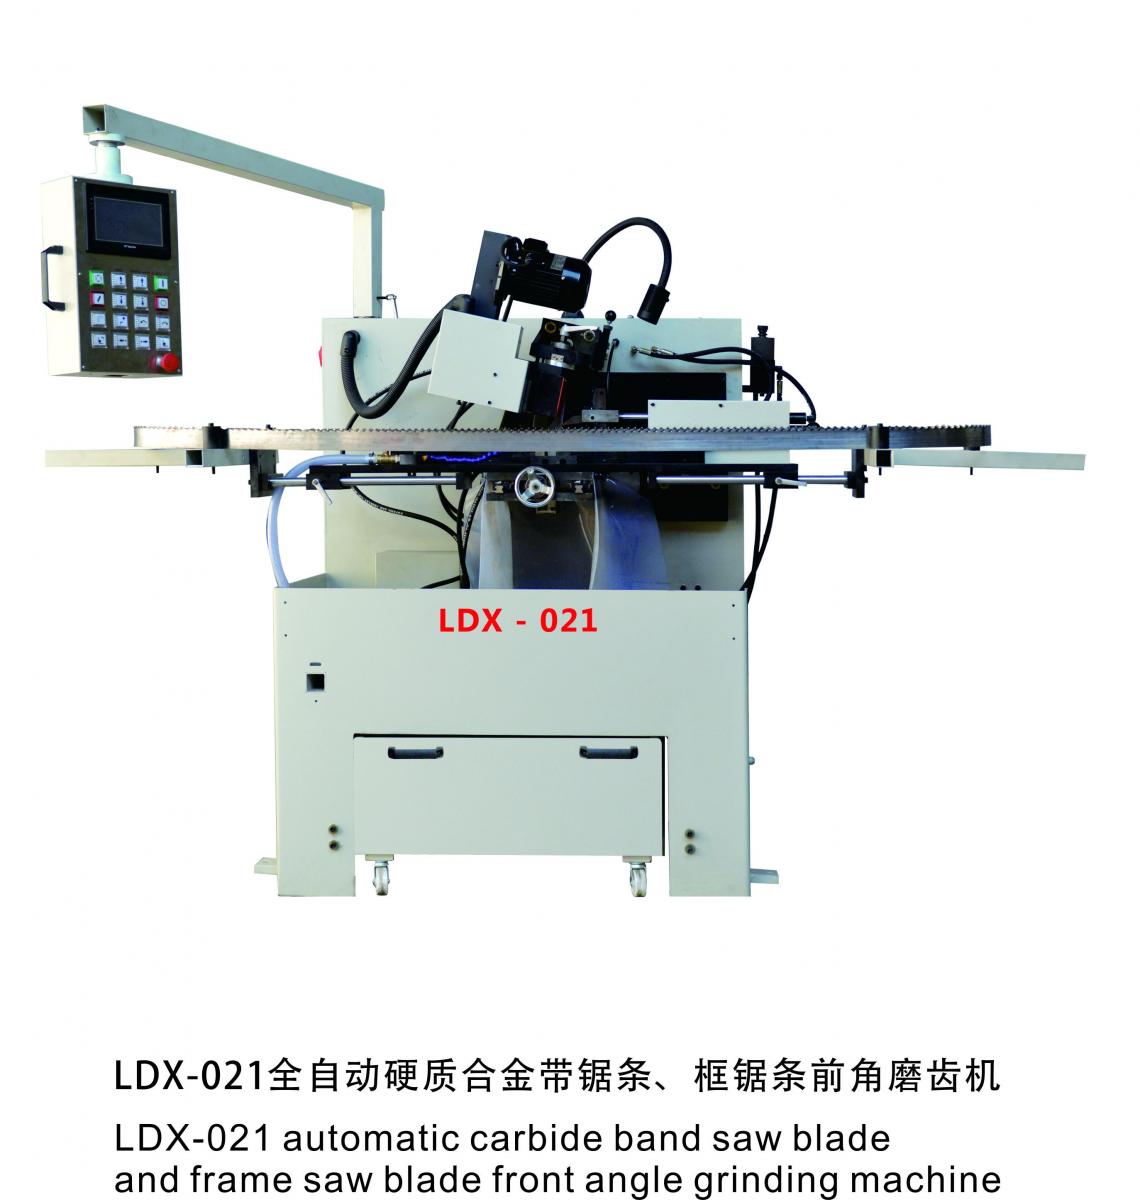 LDX-021全自动硬质合金带锯条、框锯条前角磨齿机